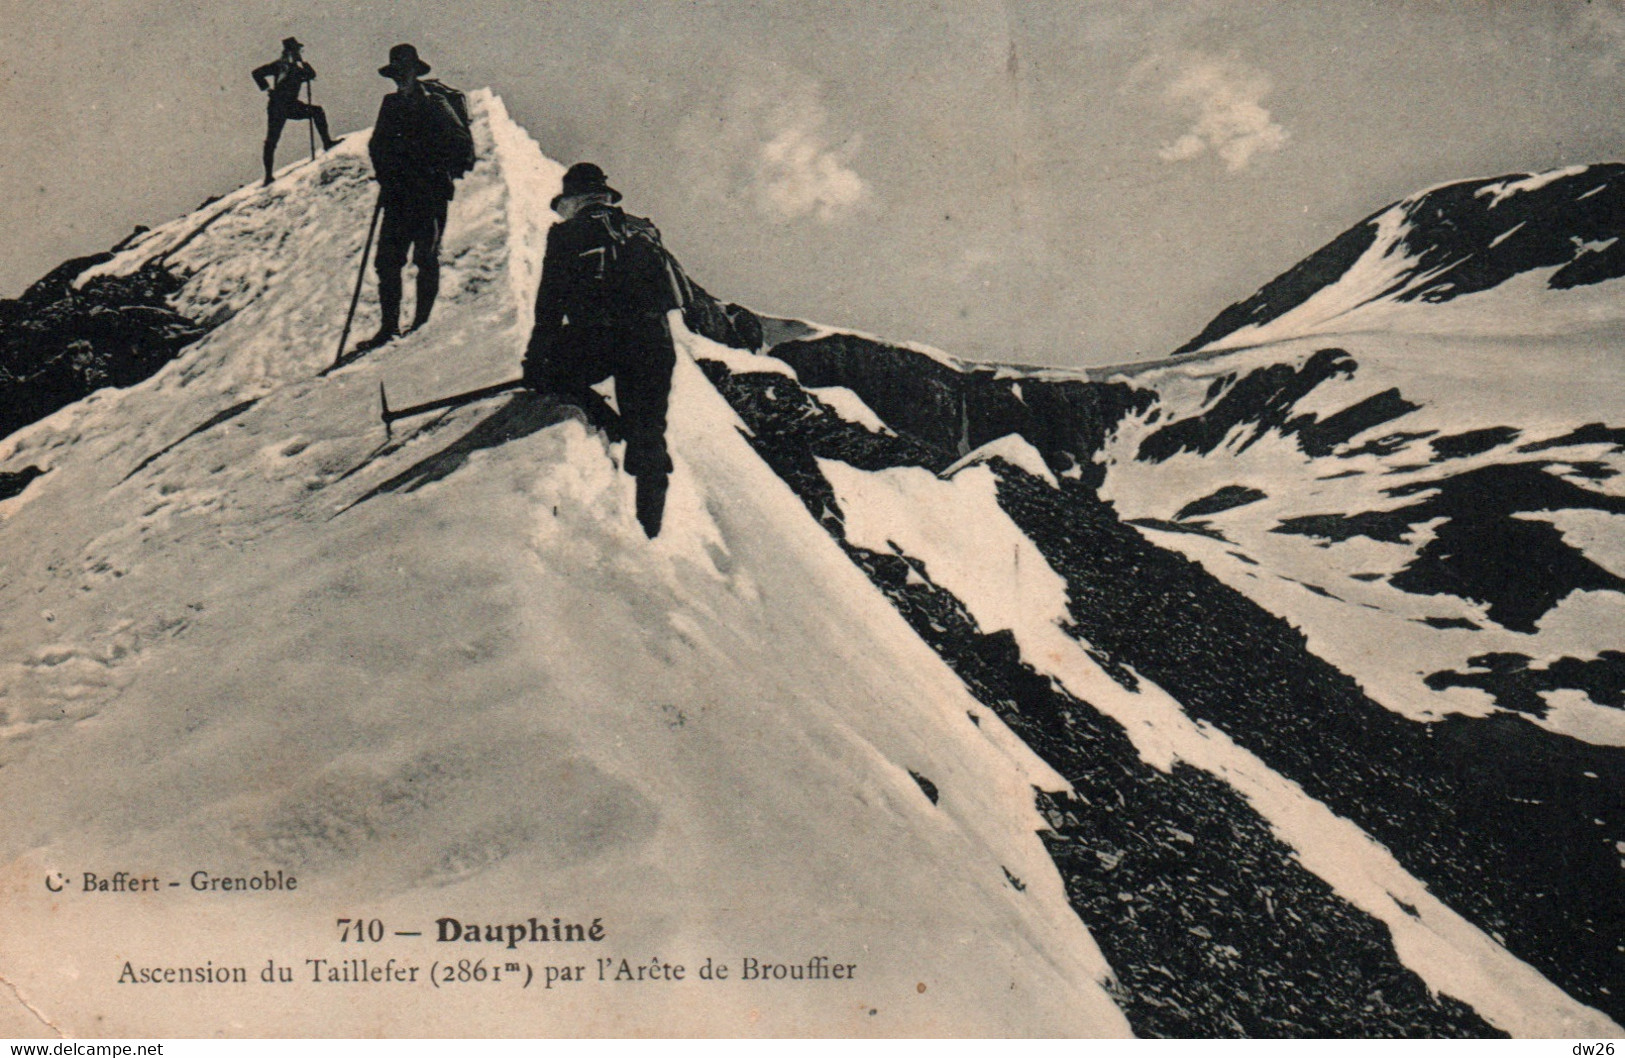 Alpinisme Dauphiné (Isère) Ascension Du Taillefer Par L'Arête De Brouffier - Edition C. Baffert - Carte N° 710 - Alpinismo